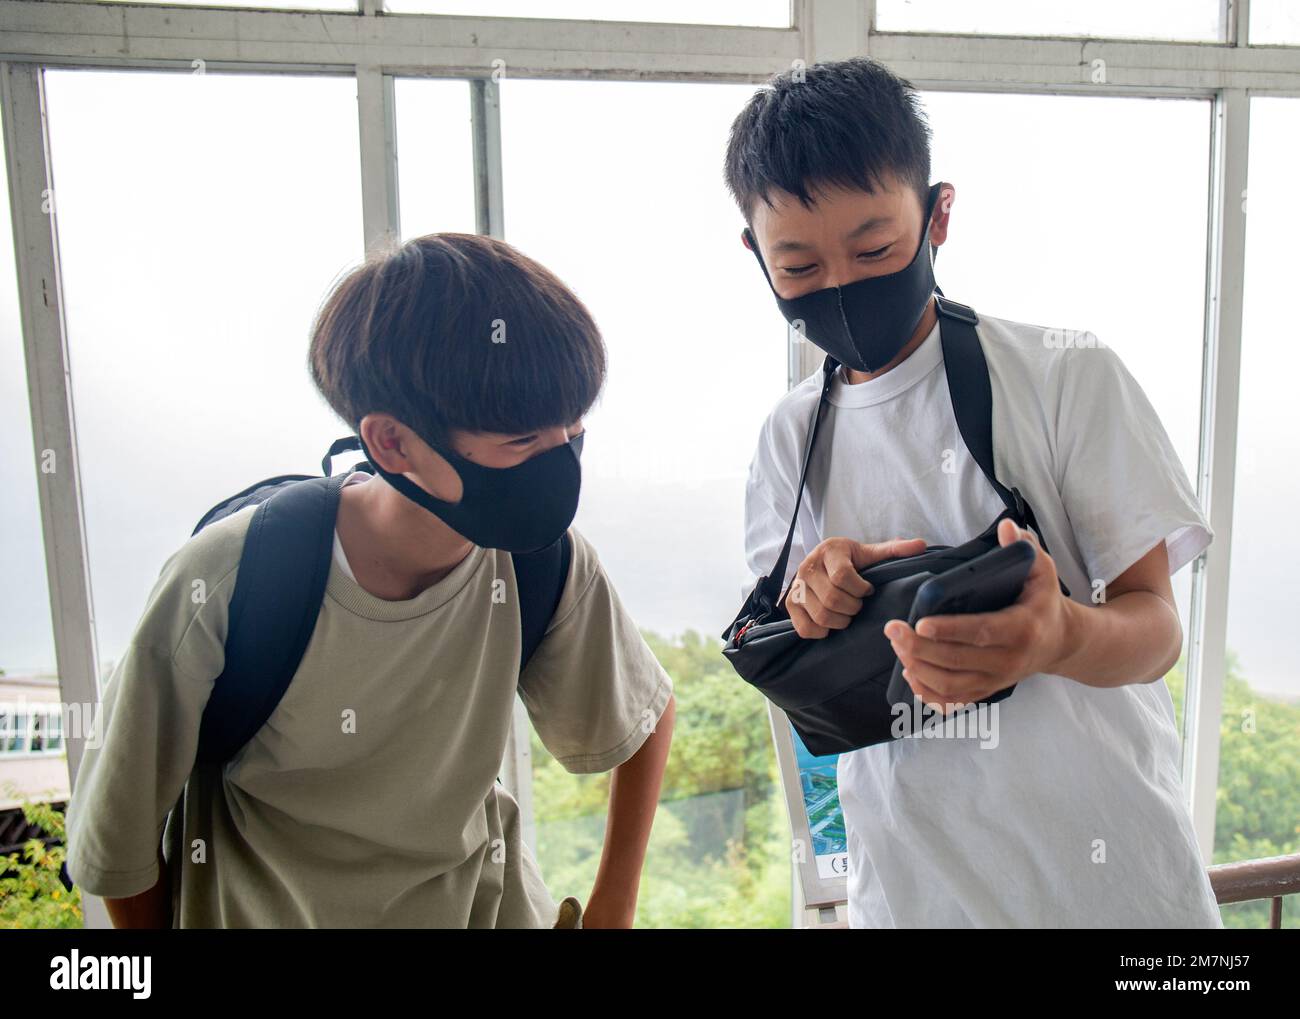 Zwei 13 Jahre alte japanische Jungen mit Gesichtsmasken, Freunde, die auf einen Handy-Bildschirm schauen. Stockfoto